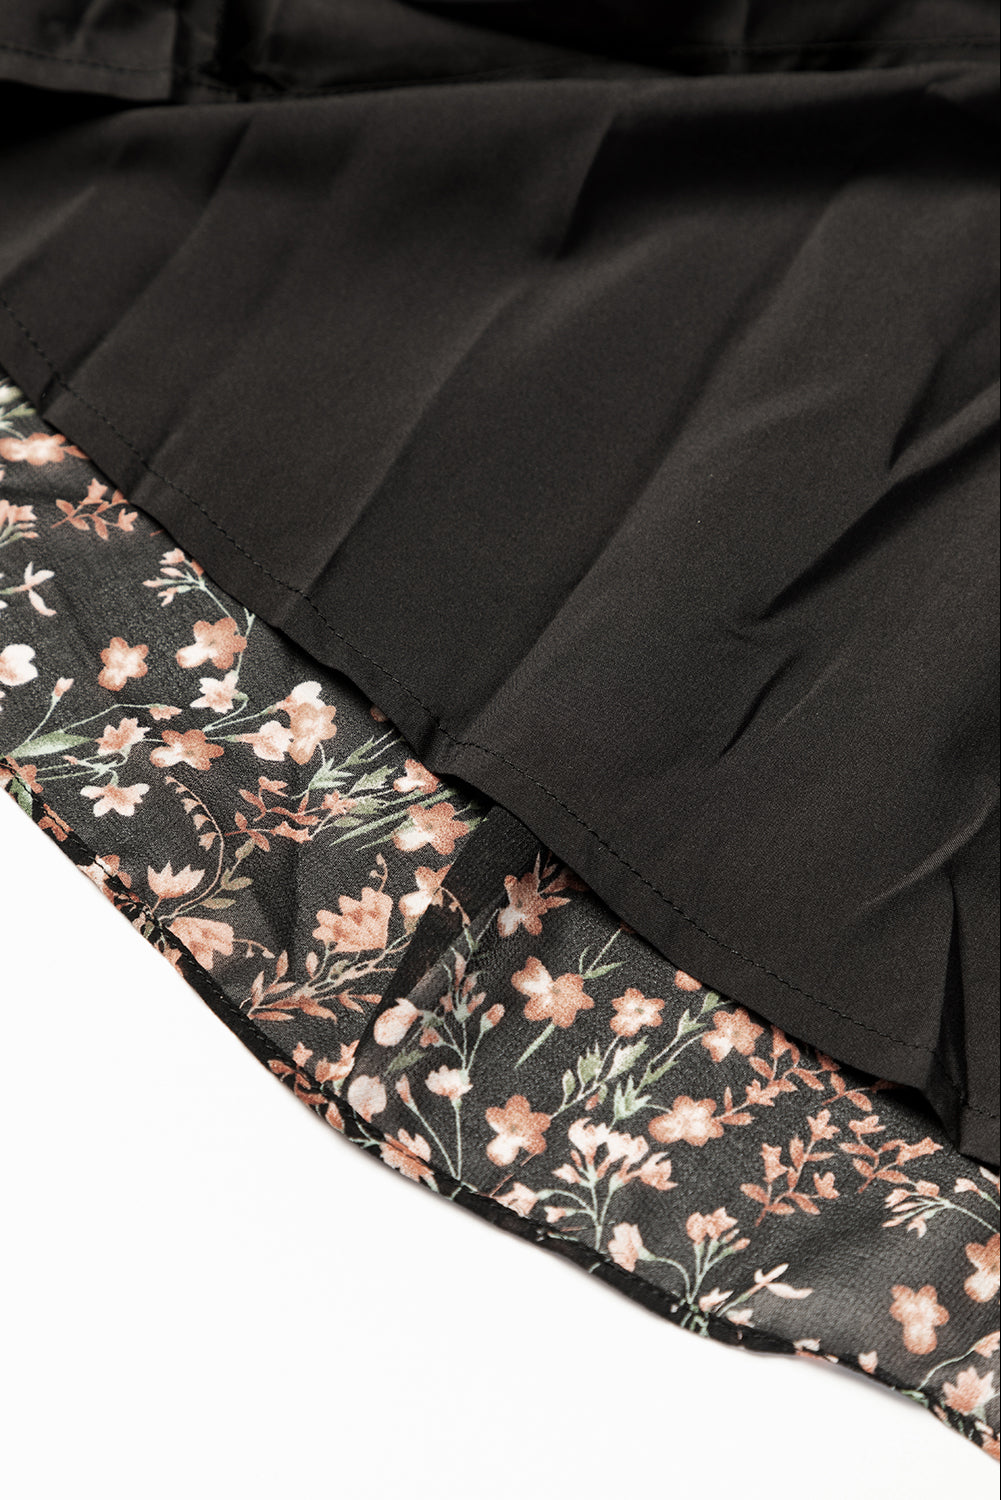 Mini-robe noire à imprimé floral, col en V, manches bouffantes et volants